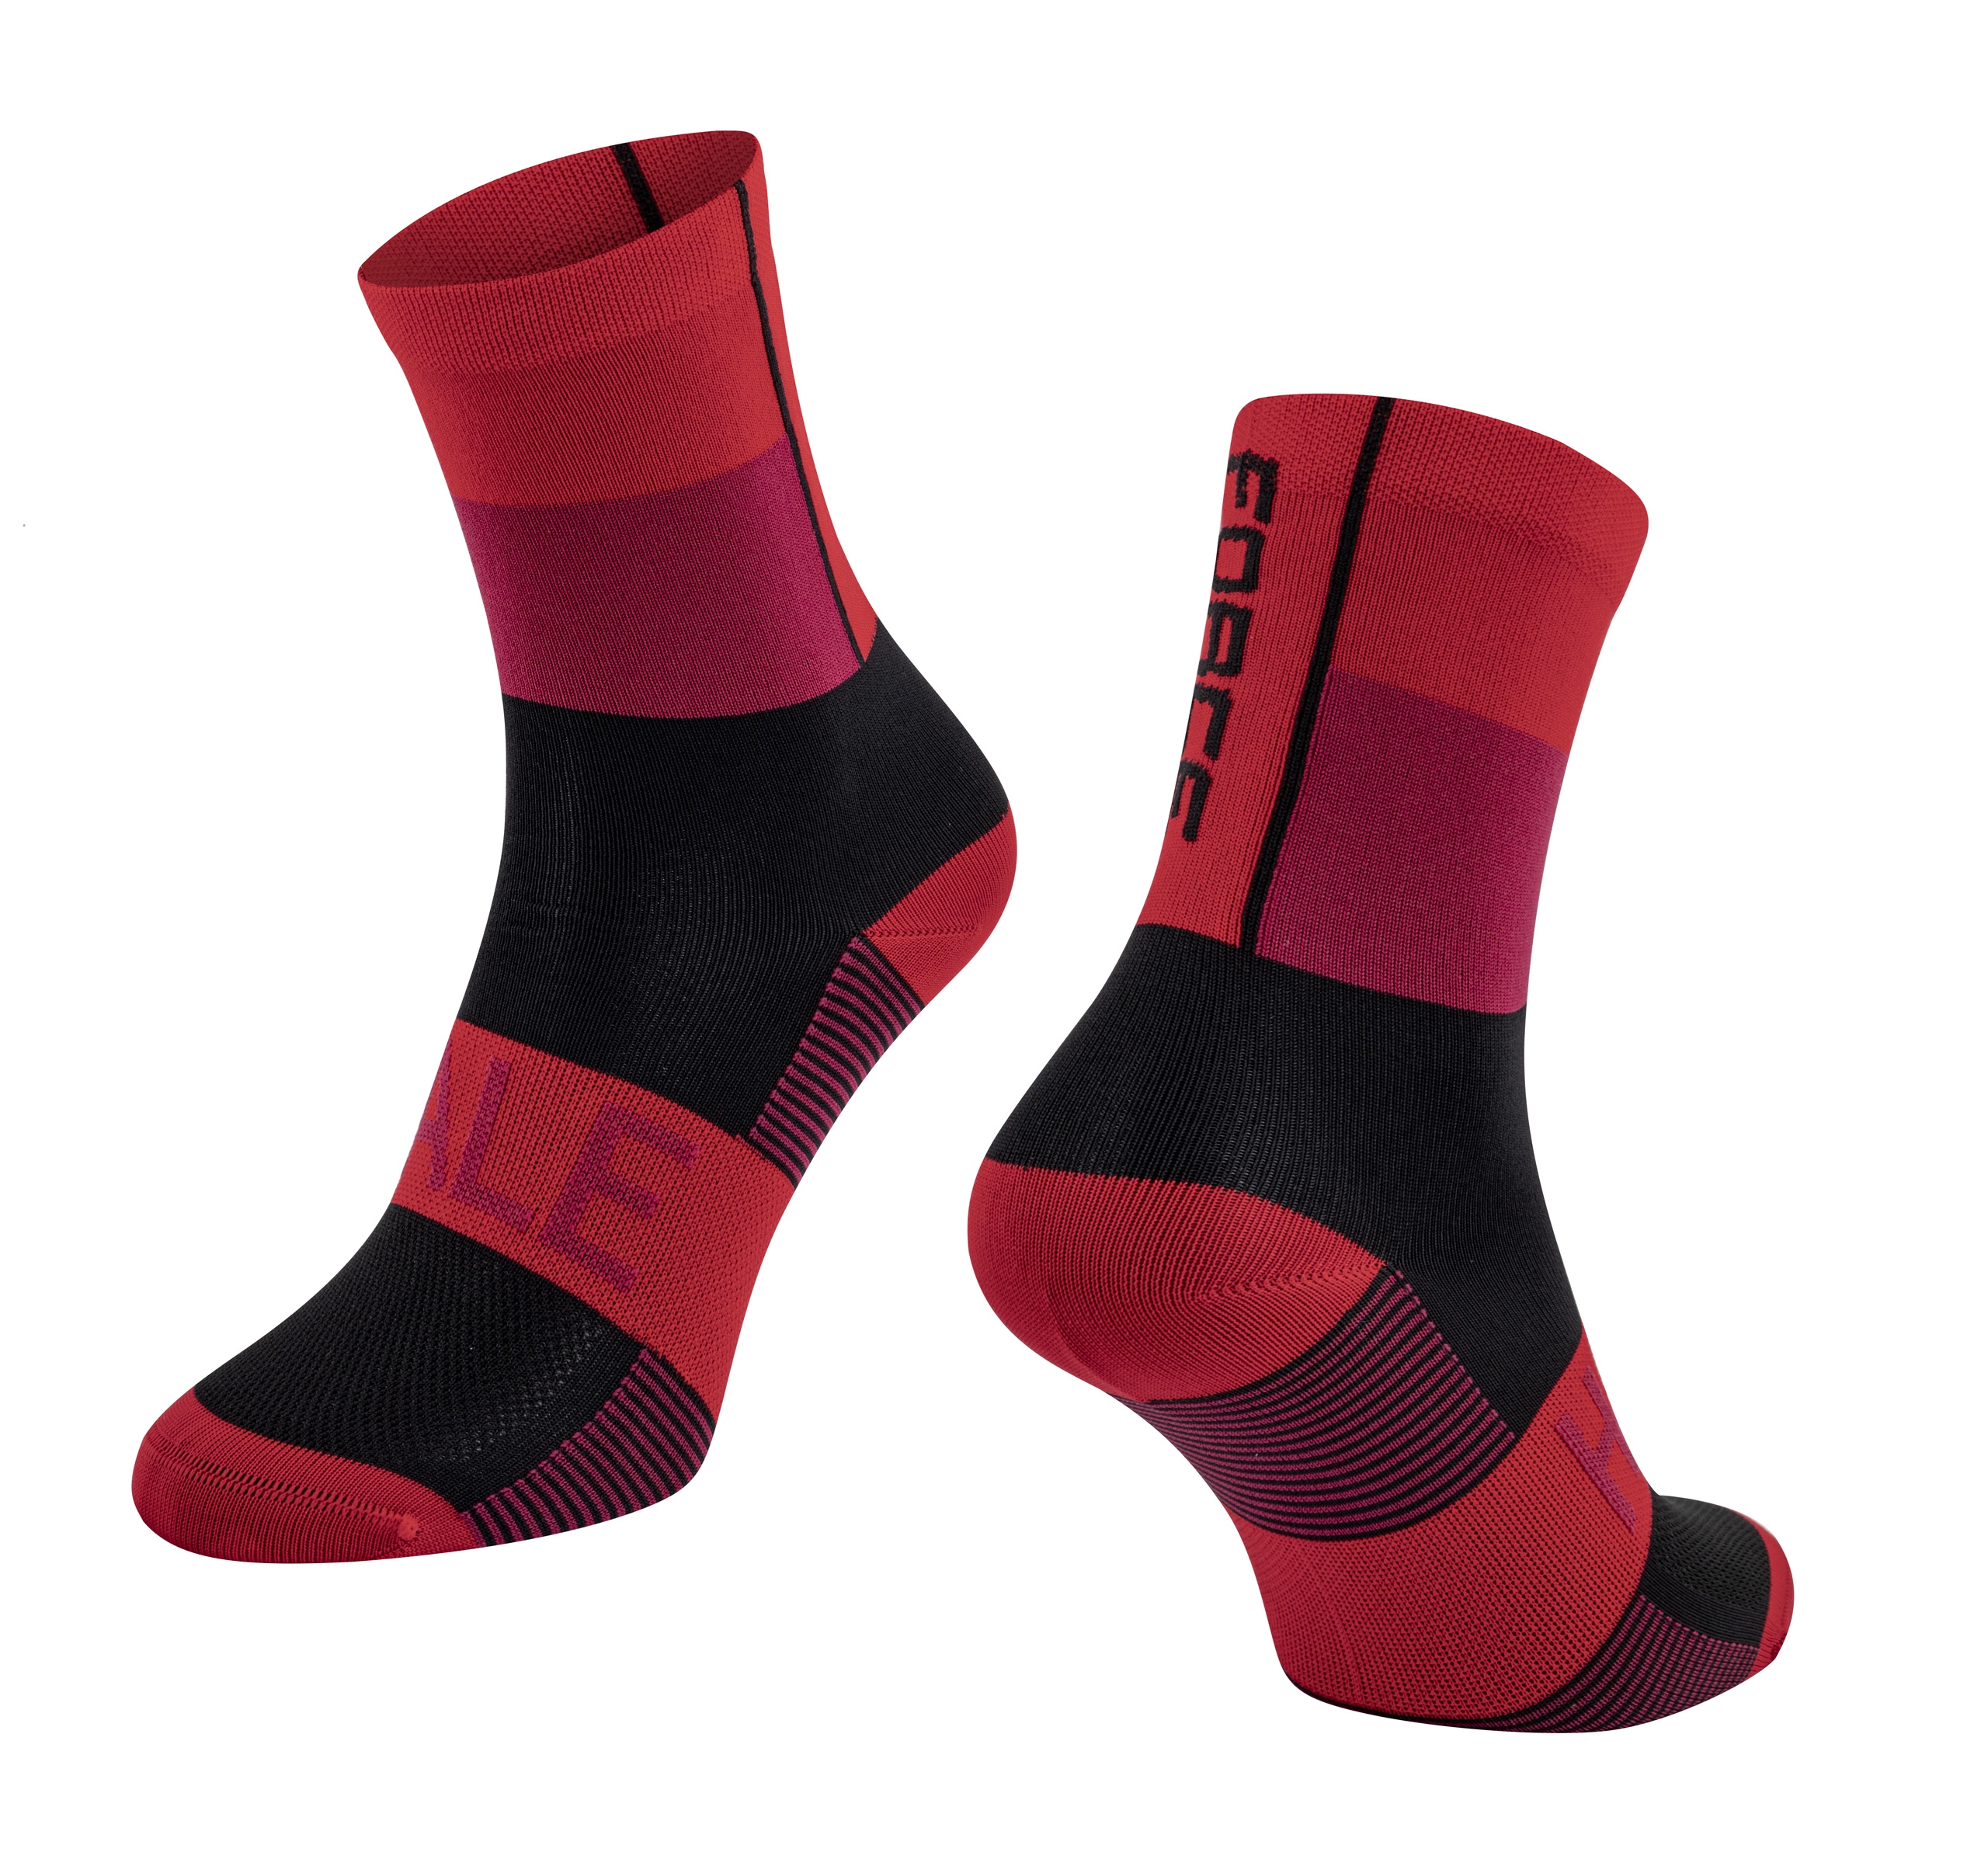 ponožky FORCE HALE, červeno-černé